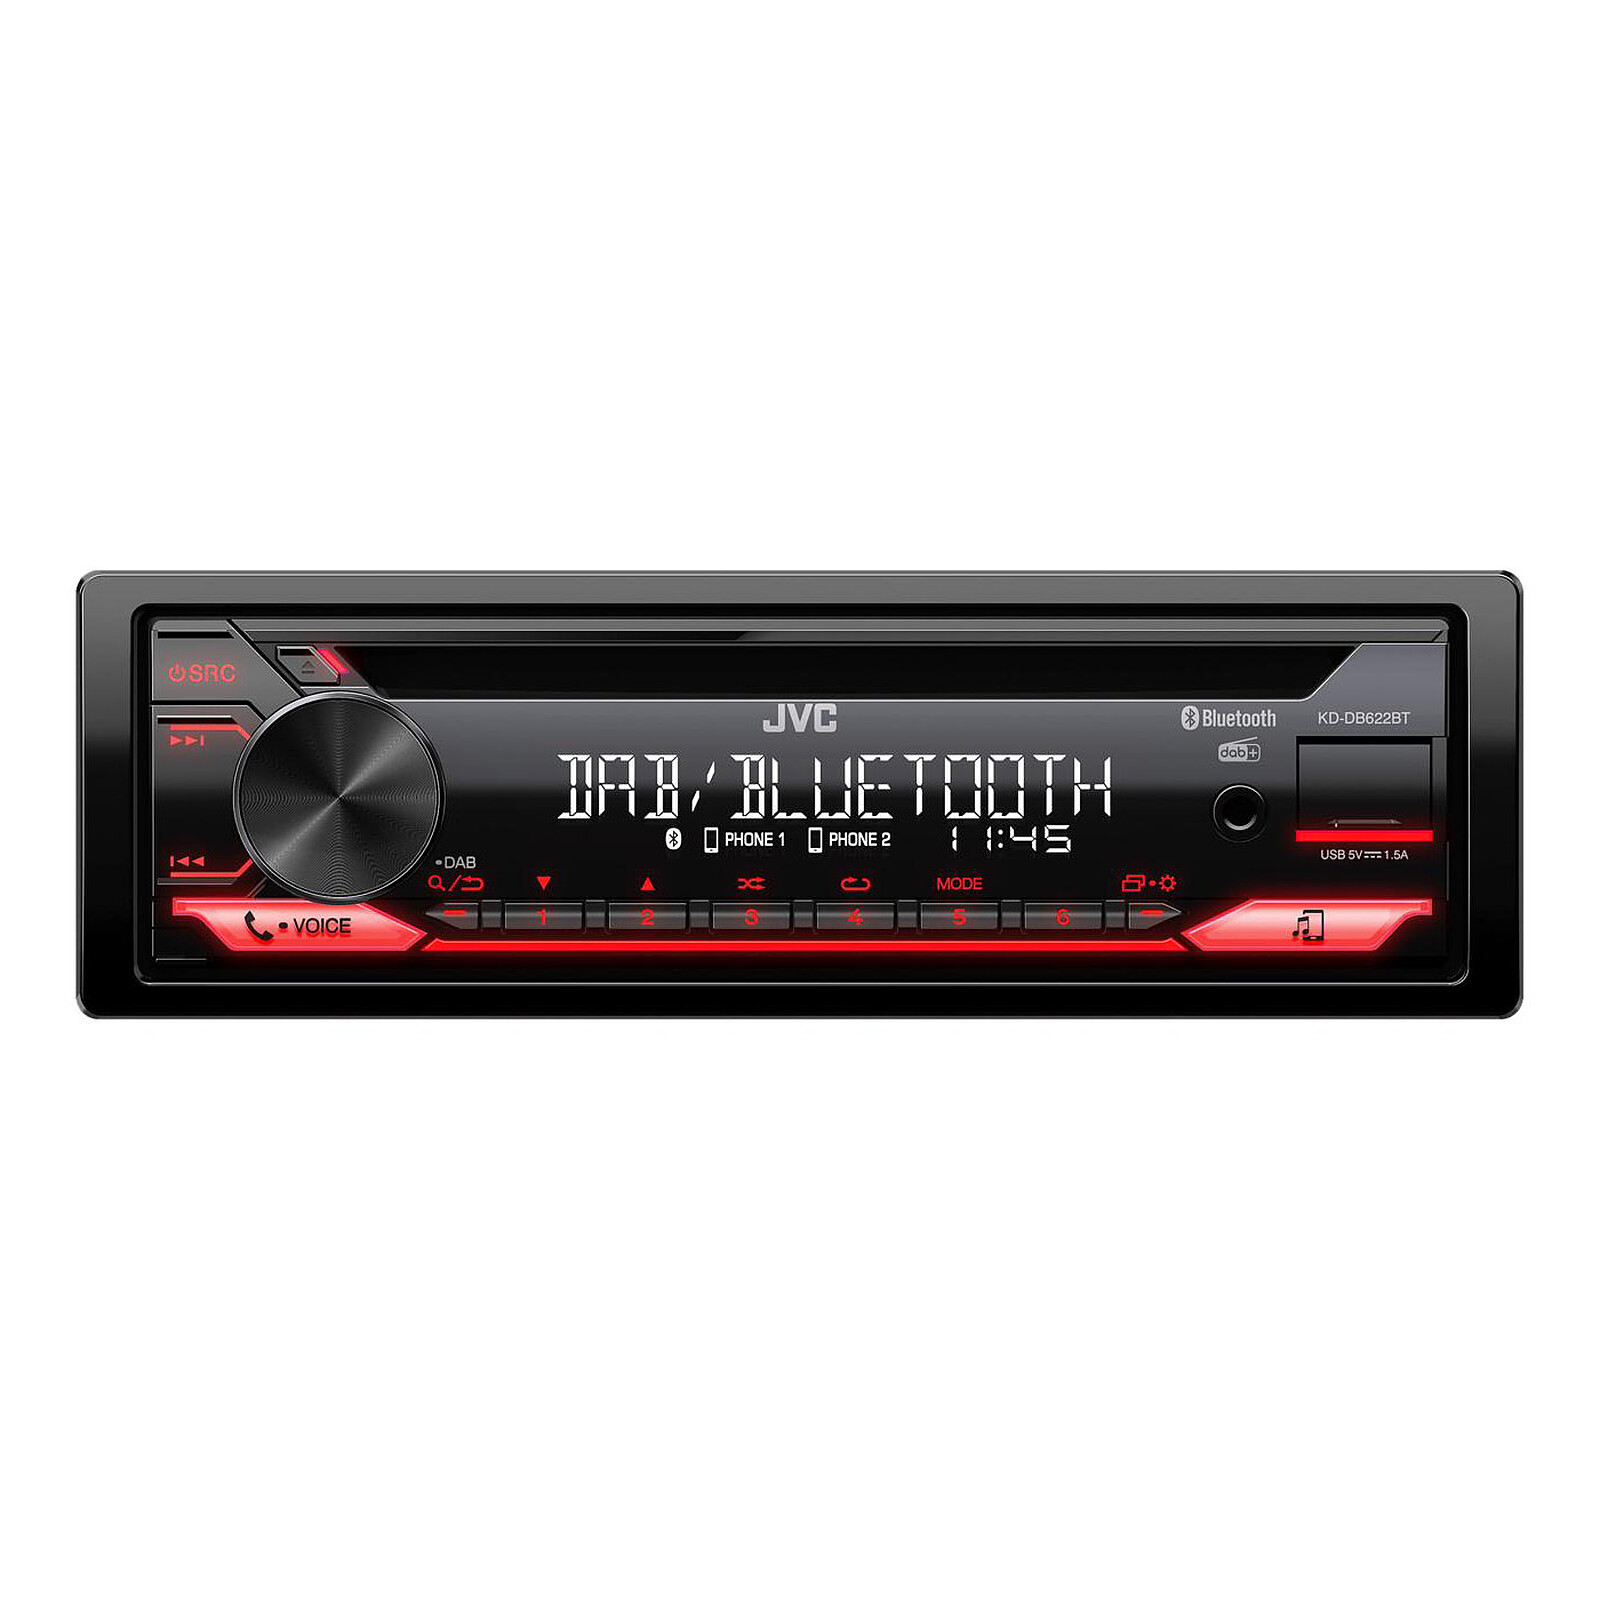 Autoradio CD - USB - Bluetooth JVC KD-DB622BT